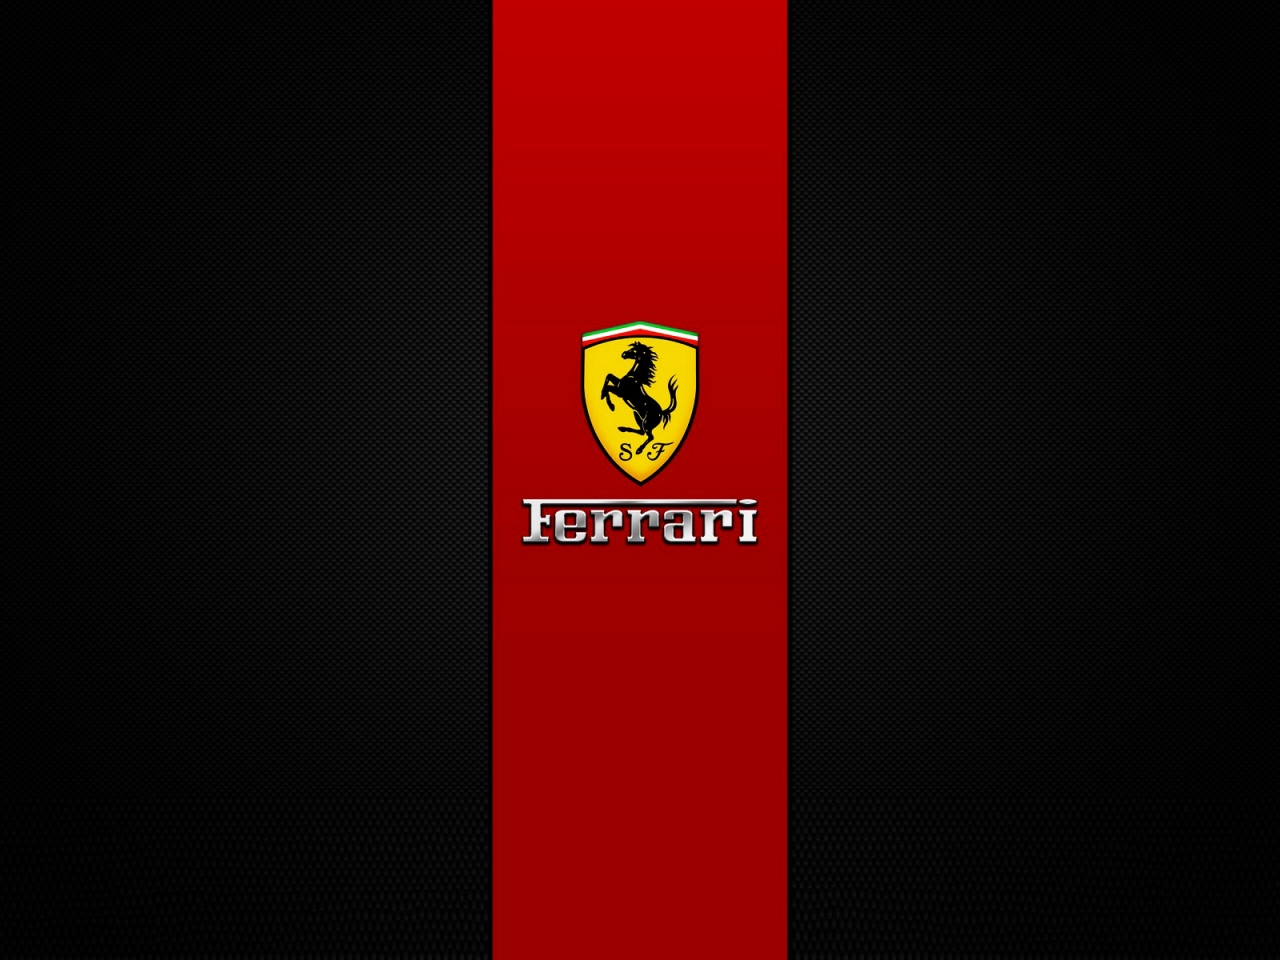 Ferrari Brand Logo for 1280 x 960 resolution